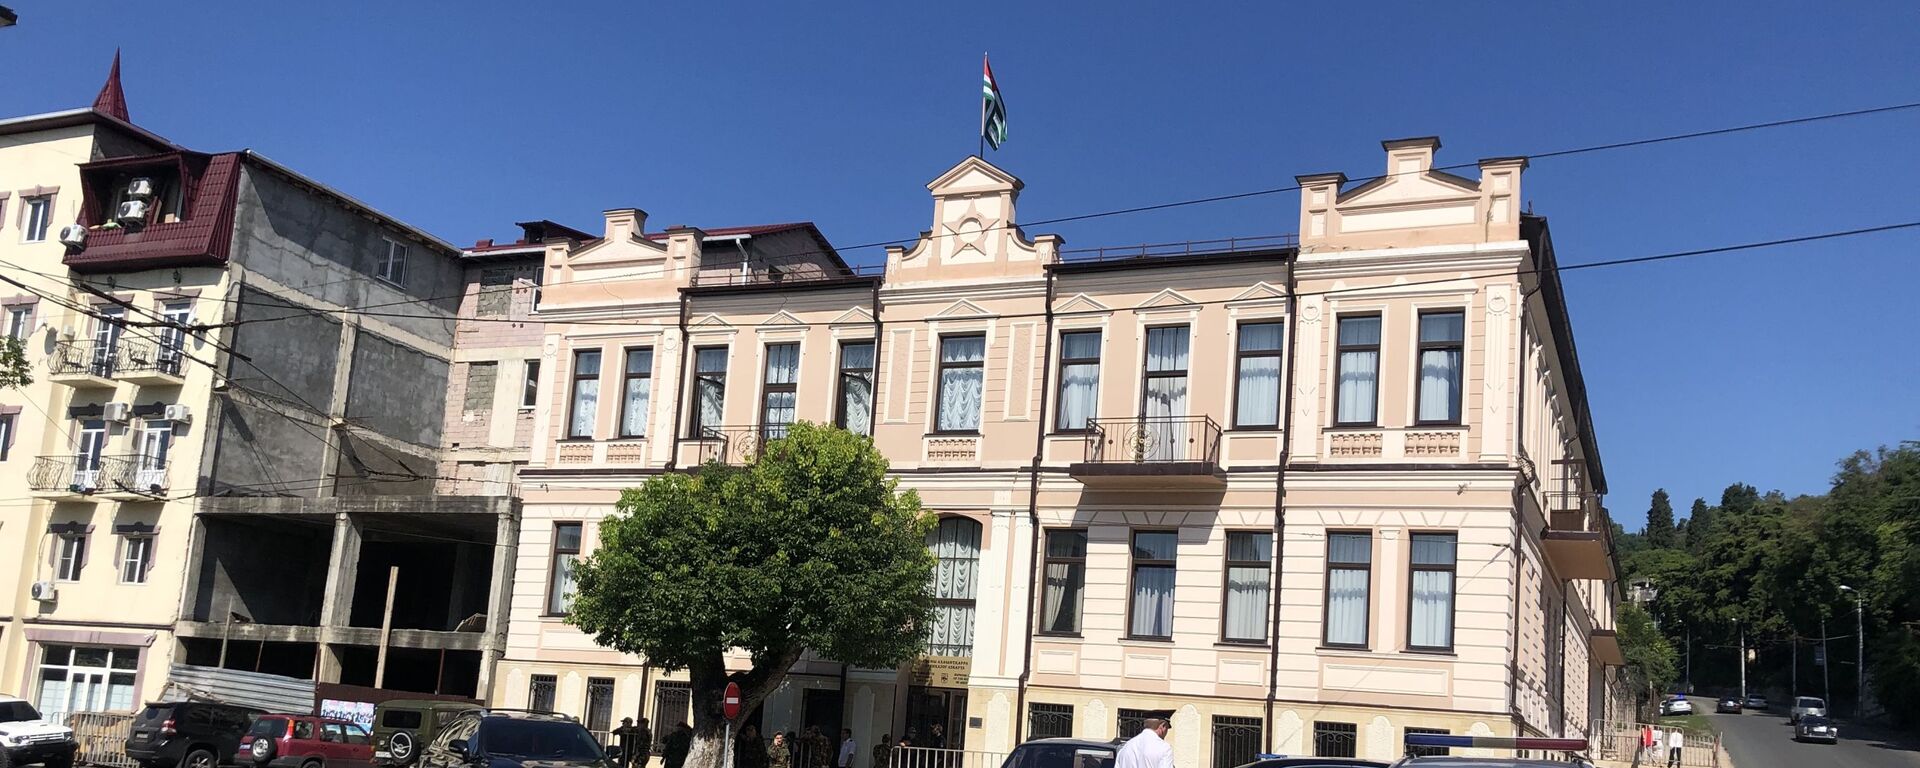 Здание Верховного суда Абхазии, 19 сентября 2019 - Sputnik Аҧсны, 1920, 16.07.2020